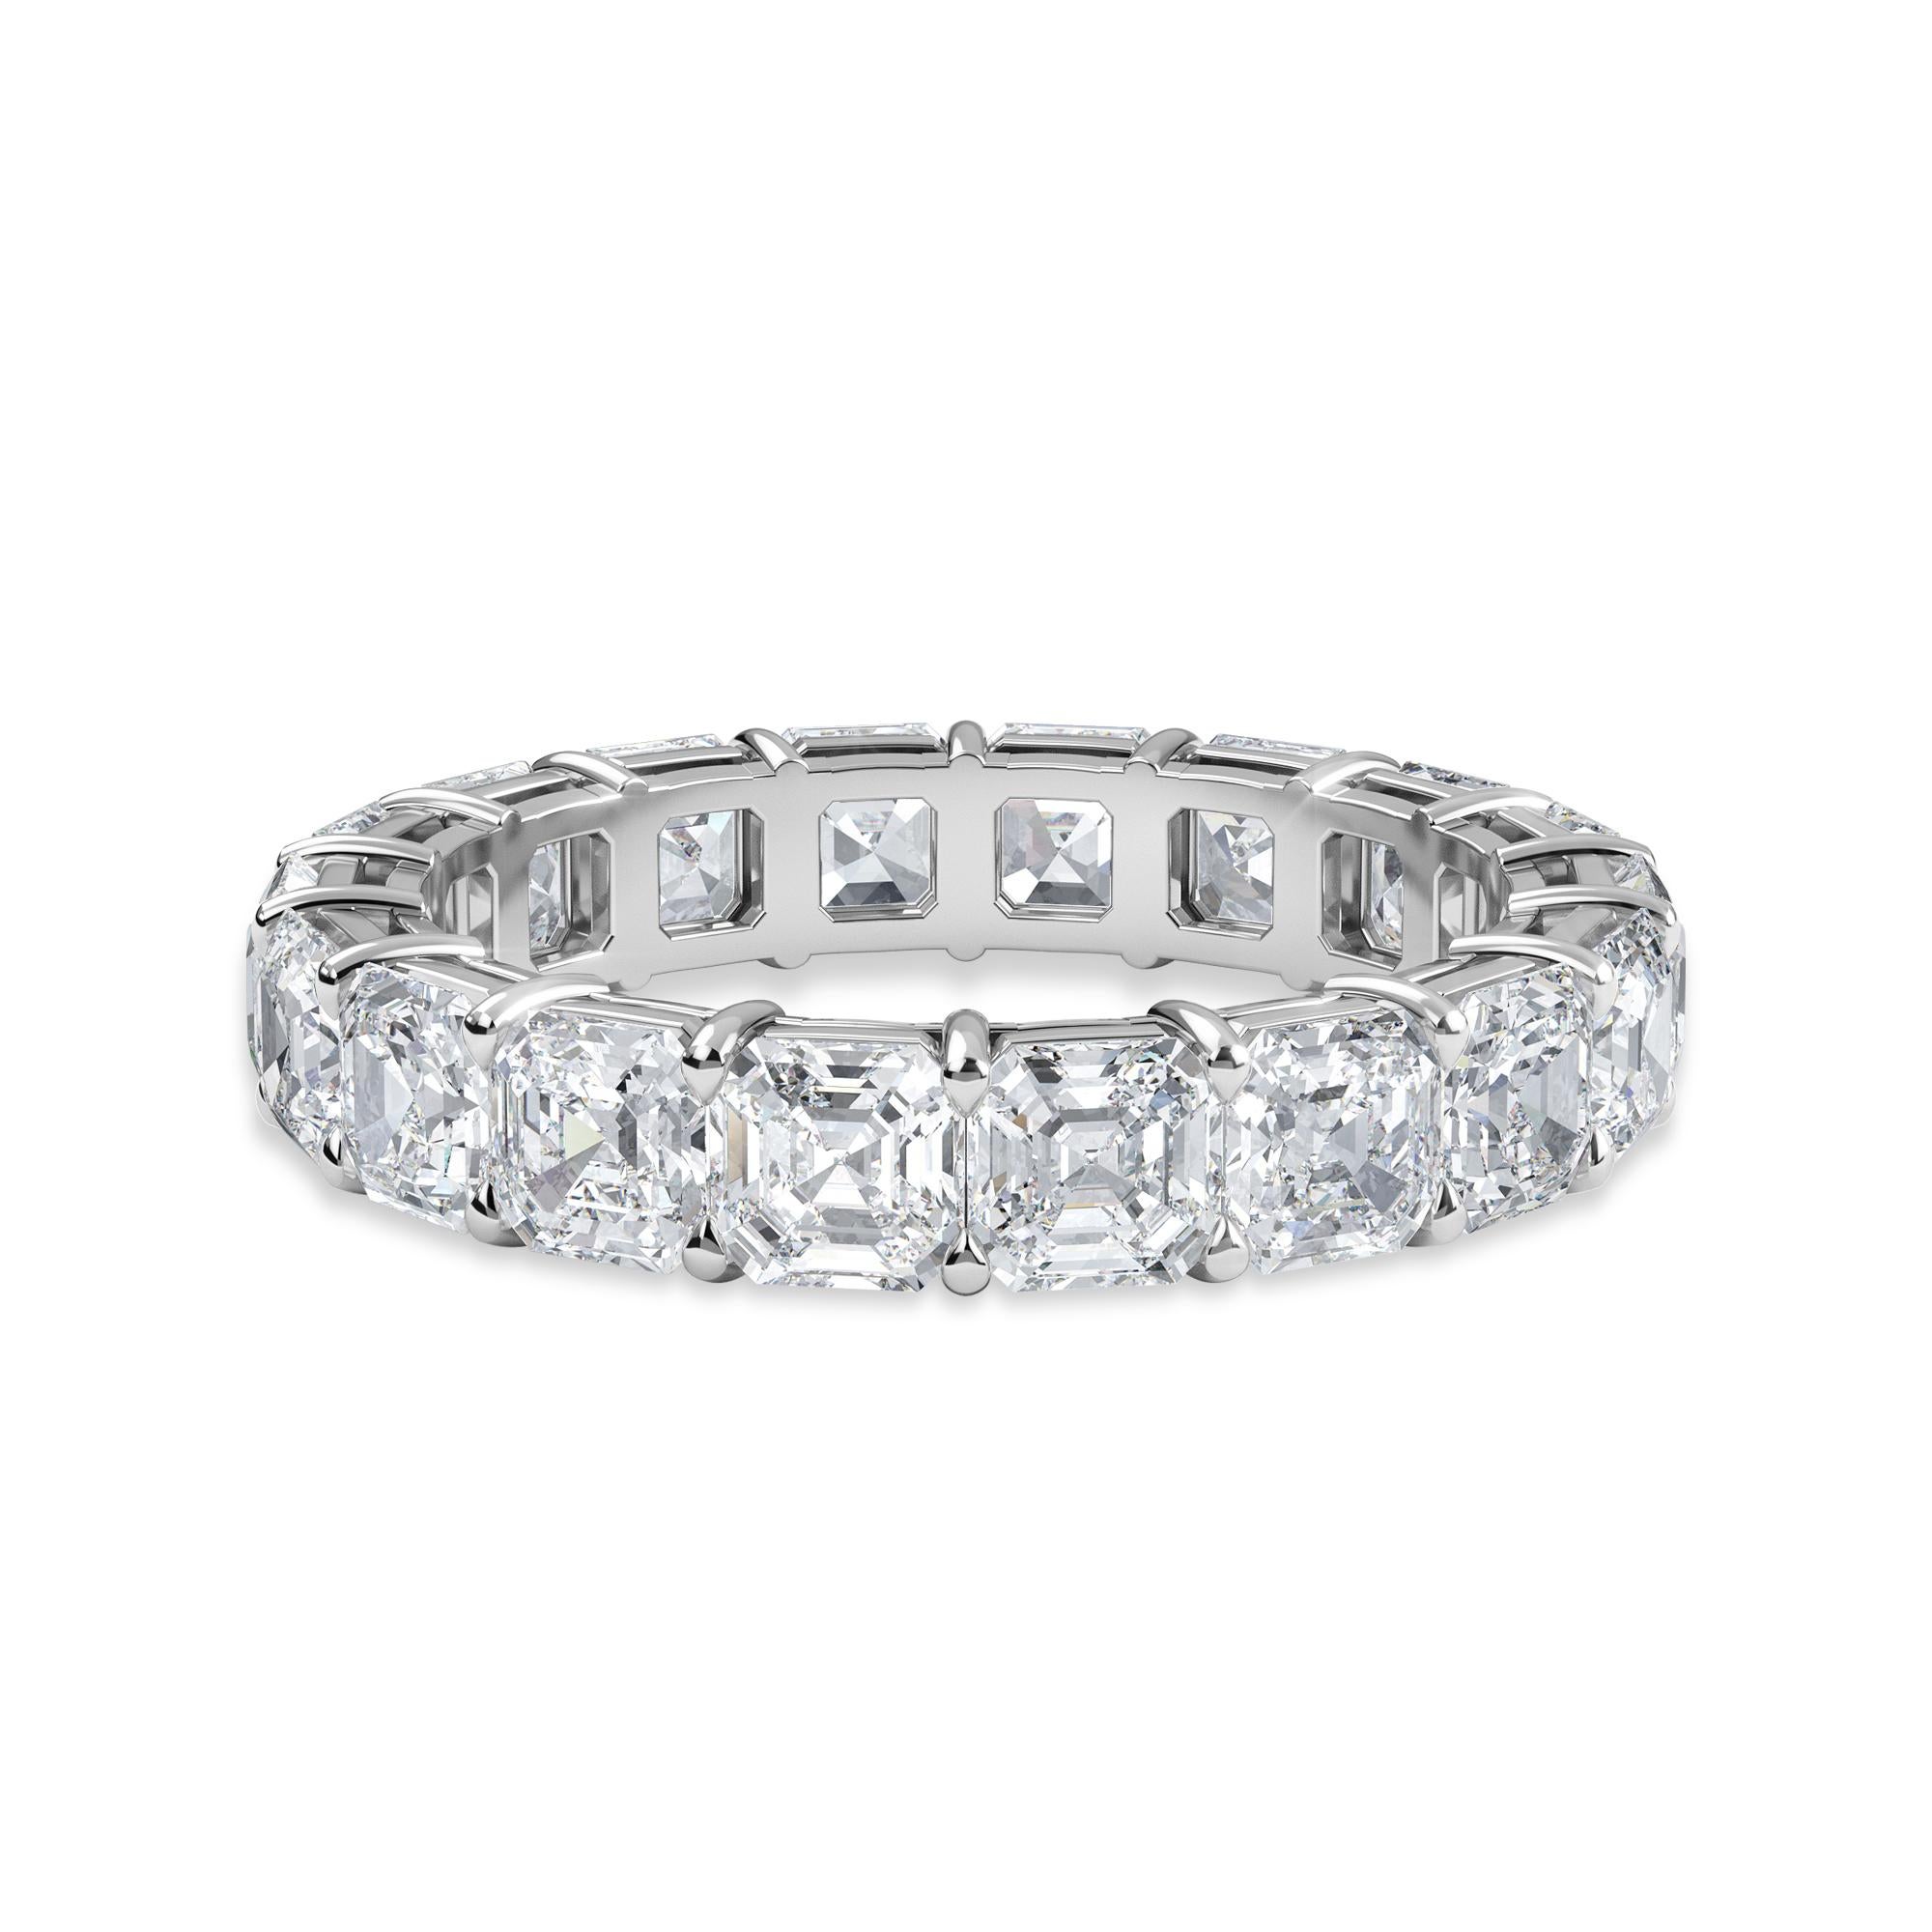 Dieses Asscher-Diamantenband für die Ewigkeit hat 18 Asscher-Diamanten mit einem Gesamtkaratgewicht von 5,50.
Die Diamanten sind F Farbe VS Klarheit. Der Ring hat die Fingergröße 6,25 und ist in Platin gefasst.